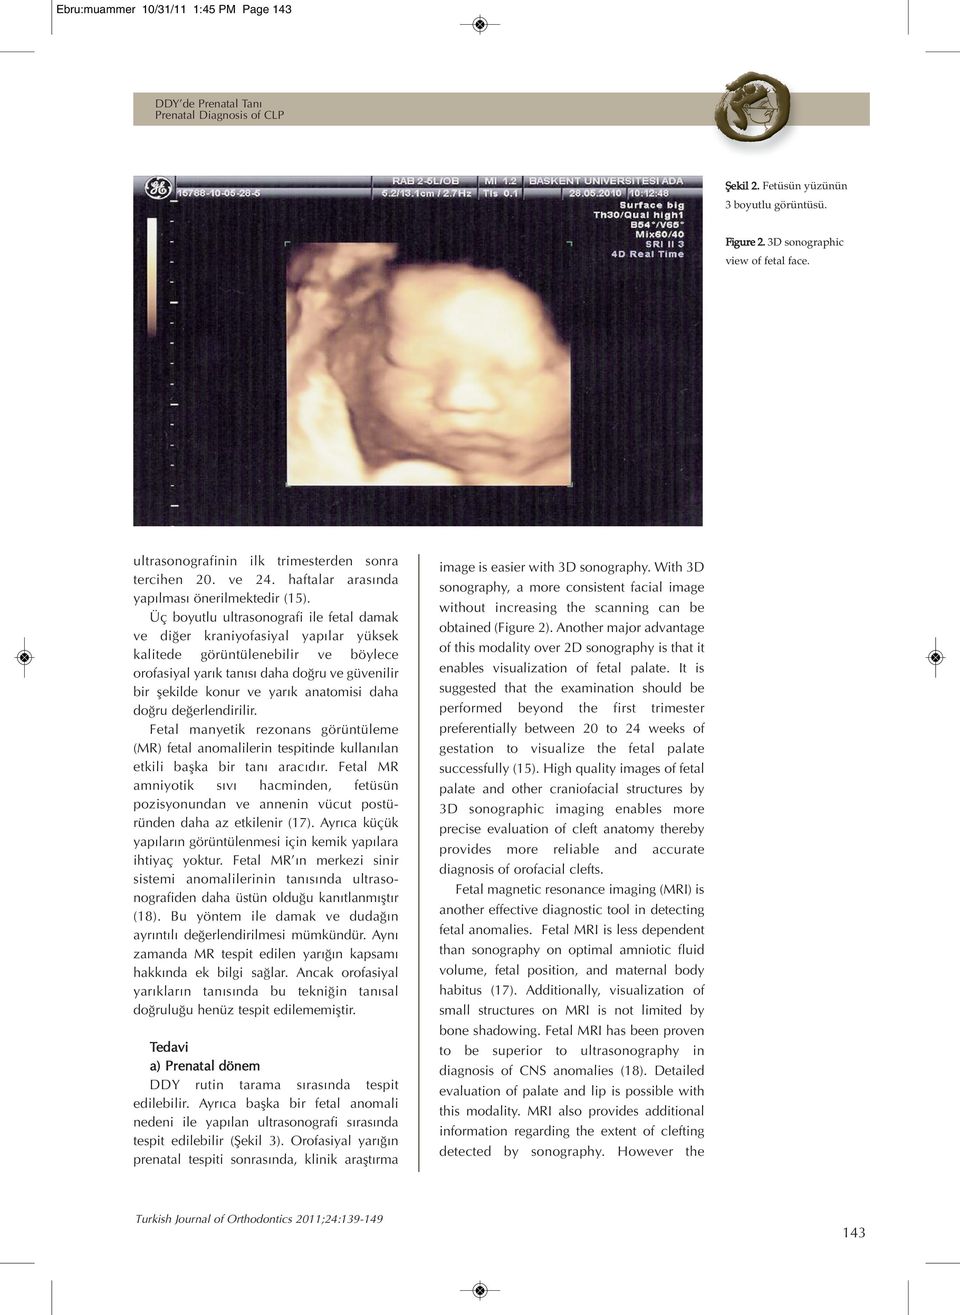 Üç boyutlu ultrasonografi ile fetal damak ve diğer kraniyofasiyal yapılar yüksek kalitede görüntülenebilir ve böylece orofasiyal yarık tanısı daha doğru ve güvenilir bir şekilde konur ve yarık